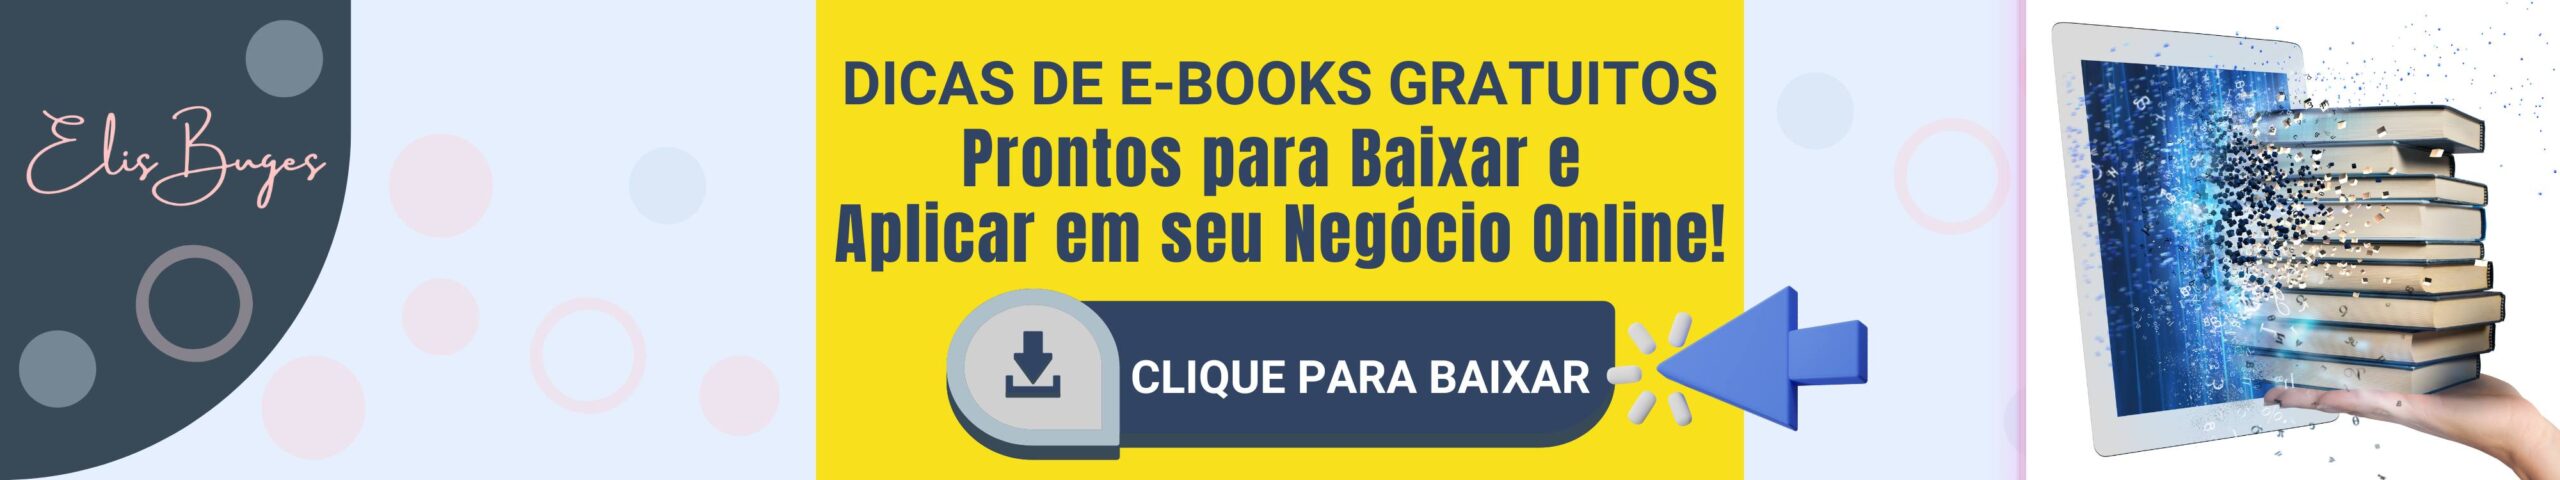 Livro Digital Gratuito - E-Book Grátis - Marketing digital - Negócios online